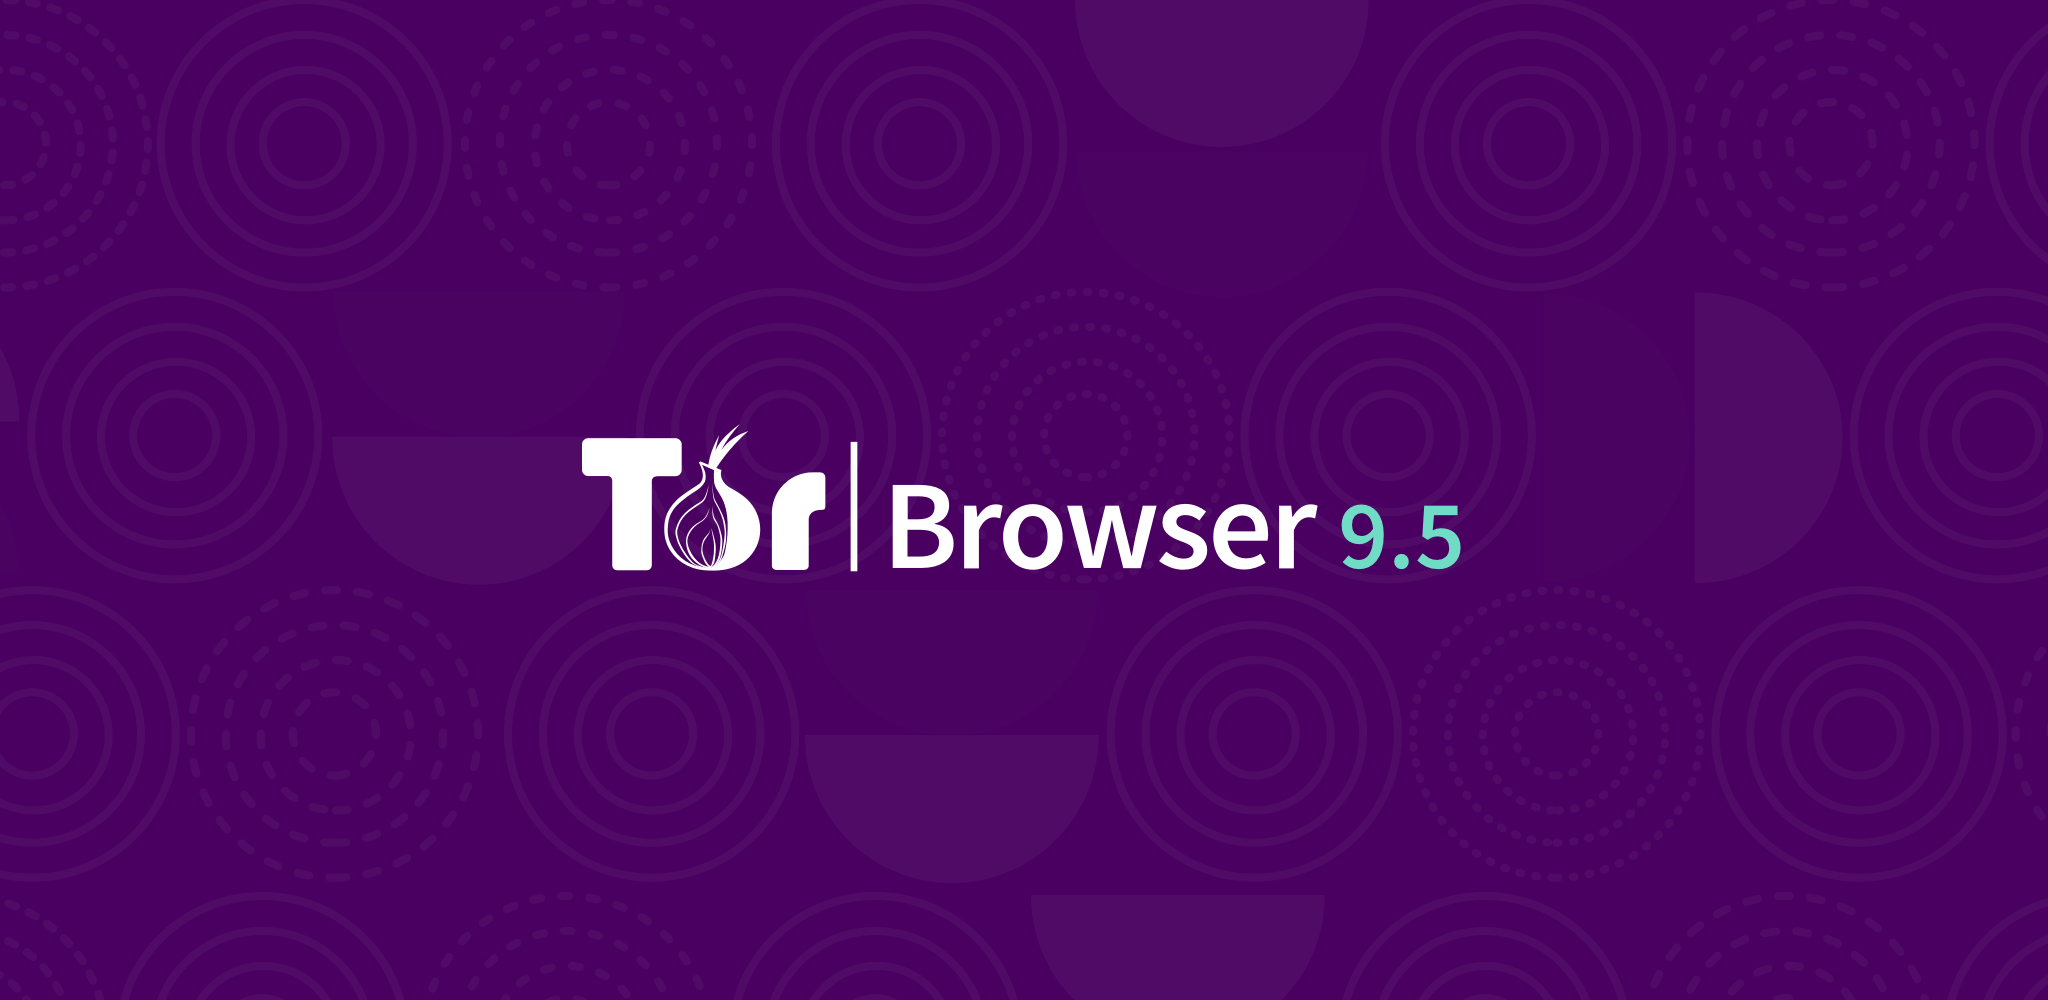 Tor browser статьи hudra скачать браузер тор бесплатно для айпад hyrda вход